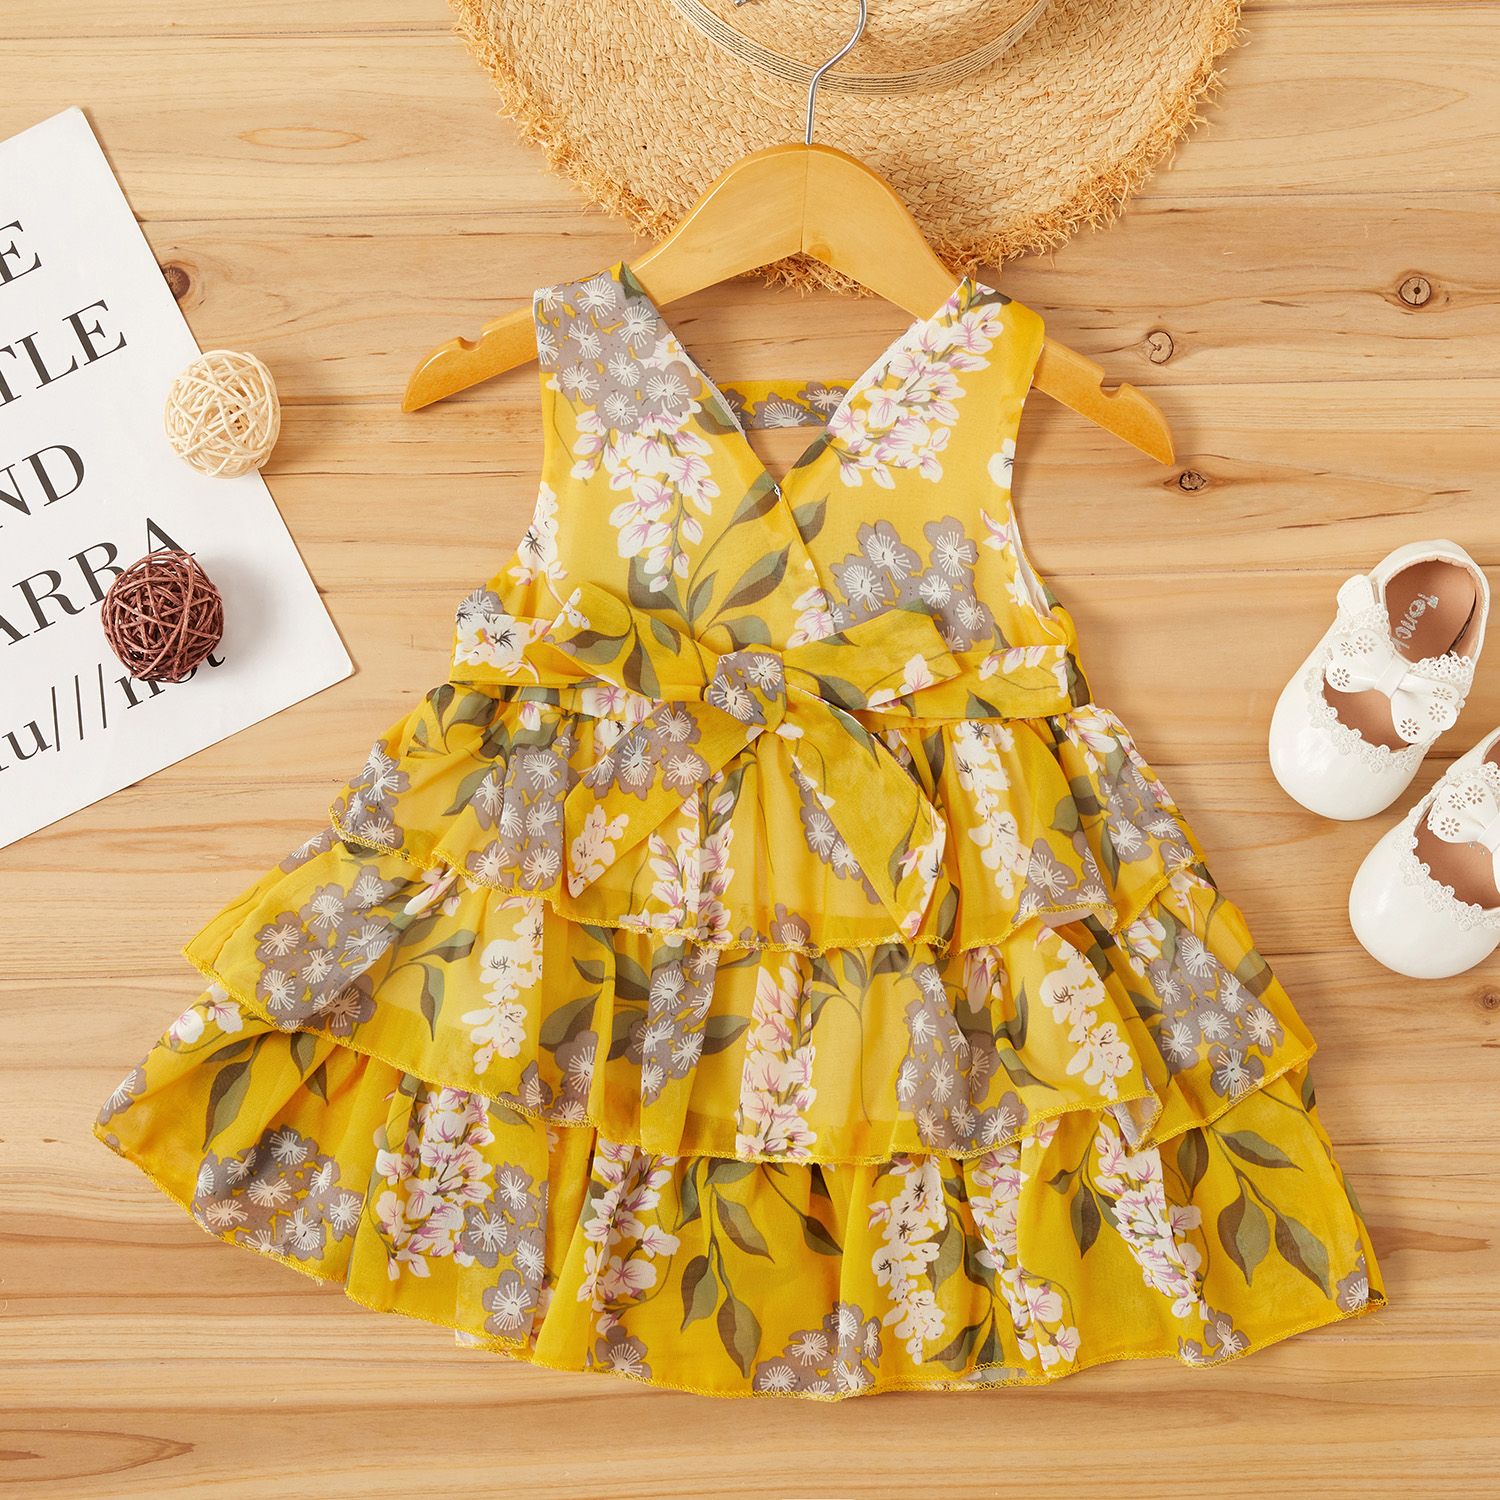 Bébé / Enfant Fille Joli Imprimé Floral Robes En Couches